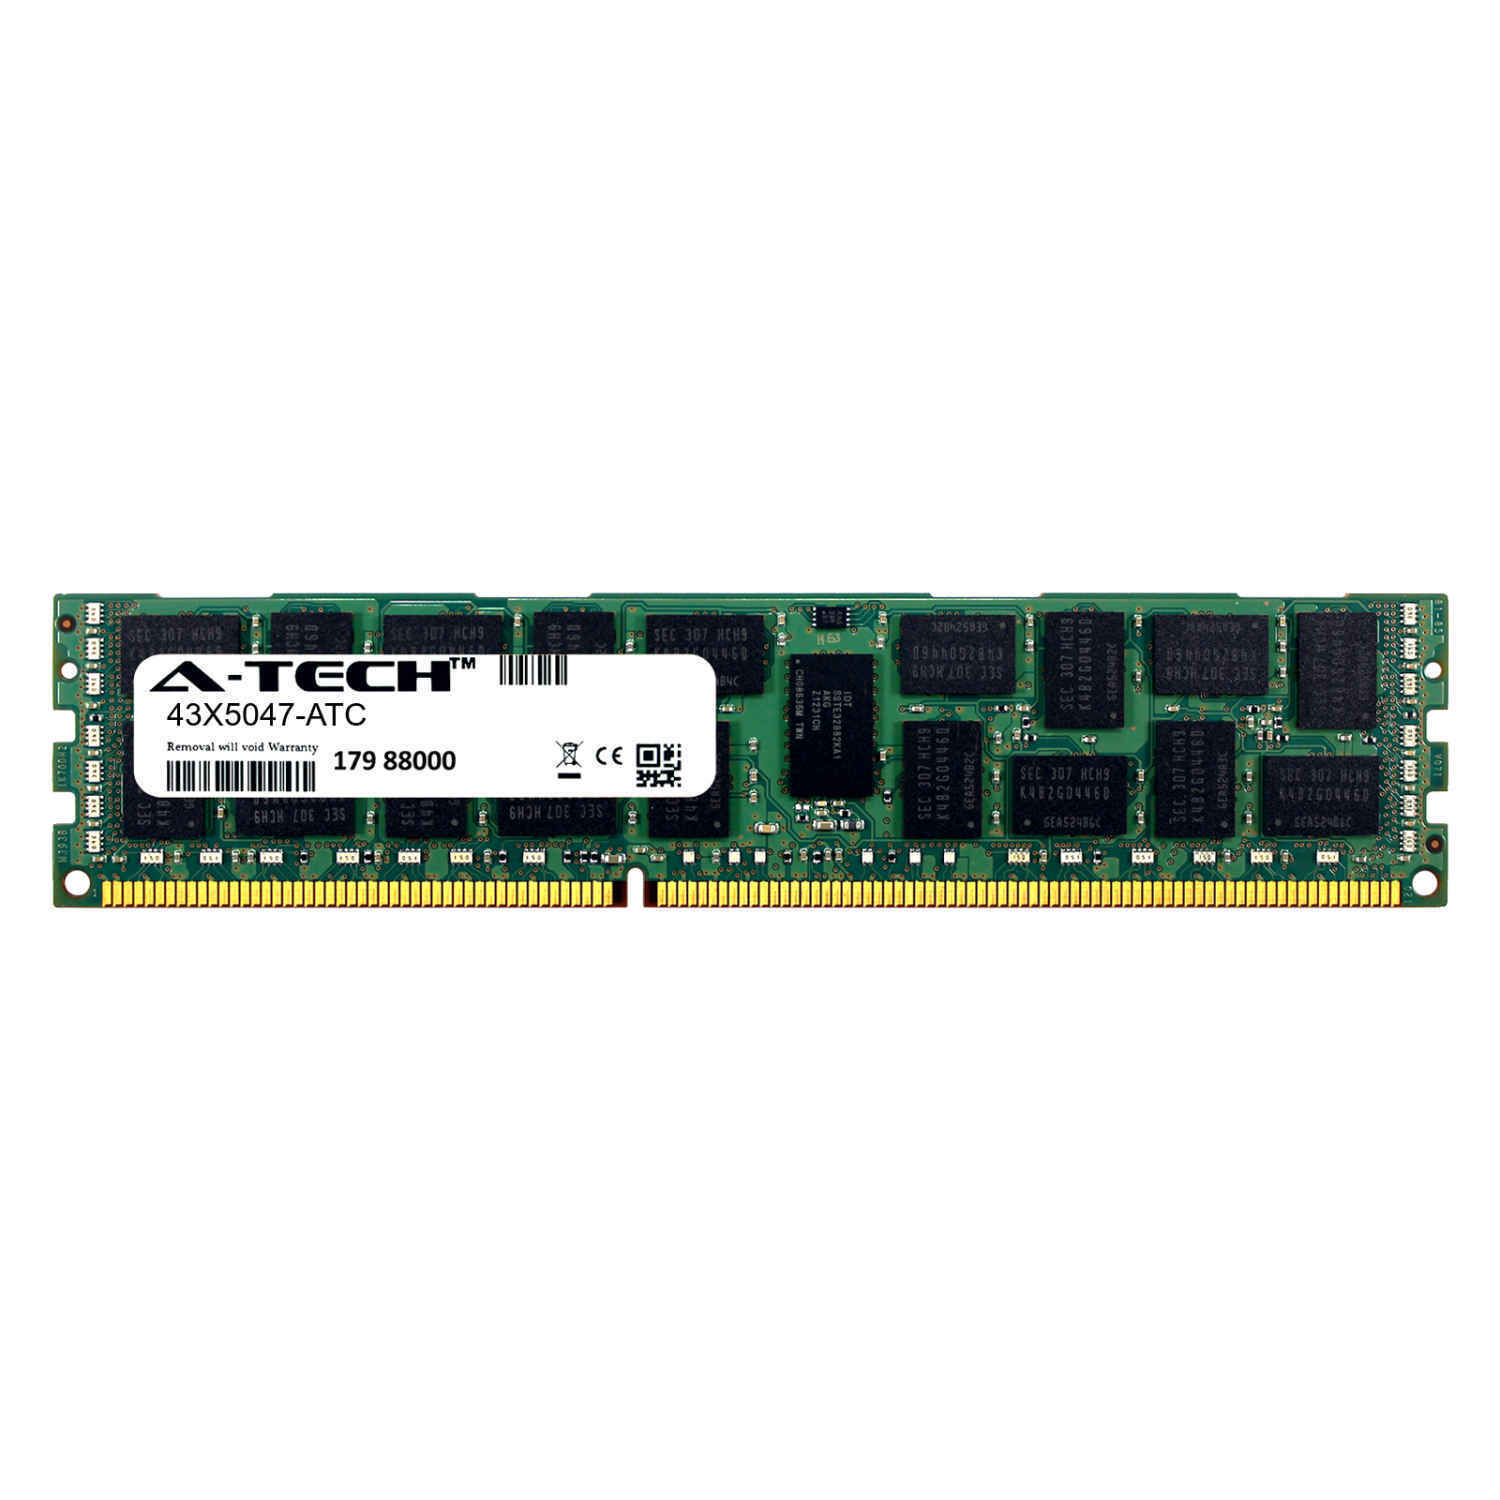 4GB DDR3 PC3-10600R 1333MHz RDIMM (IBM 43X5047 Equivalent) Server Memory RAM